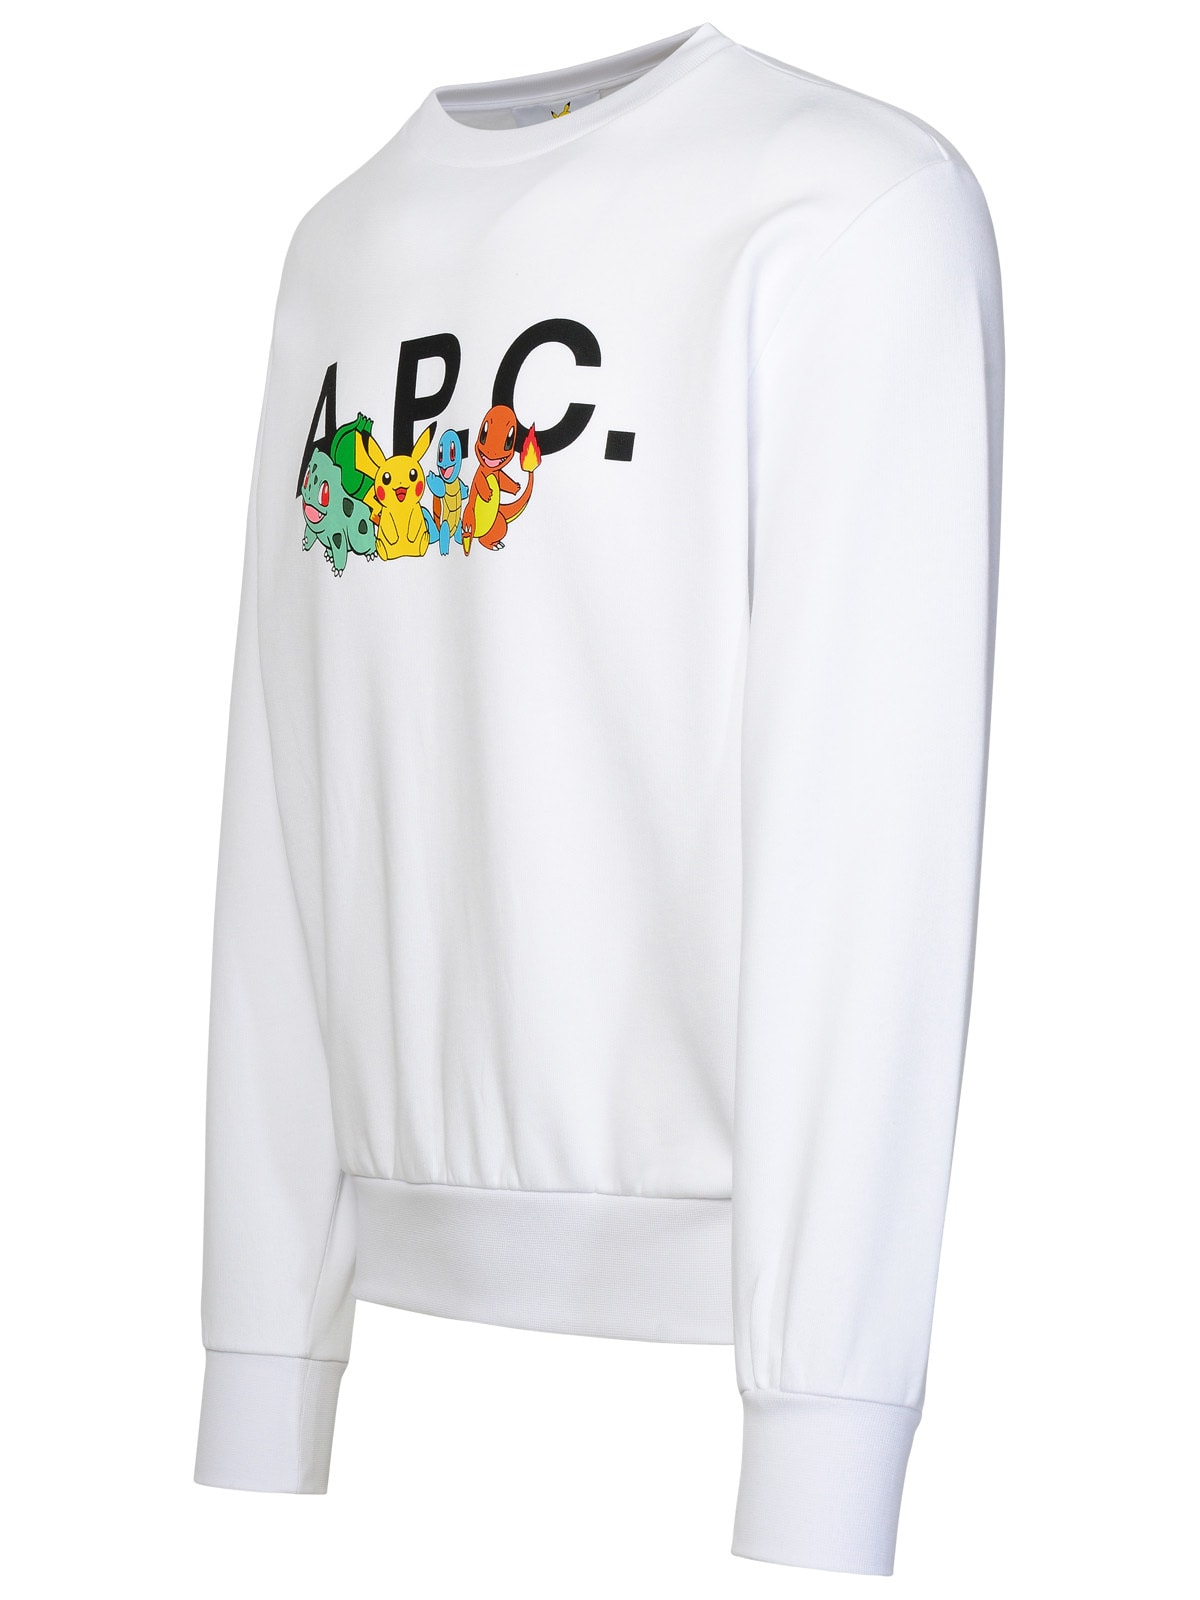 Shop Apc Pokémon The Crew White Cotton Sweatshirt